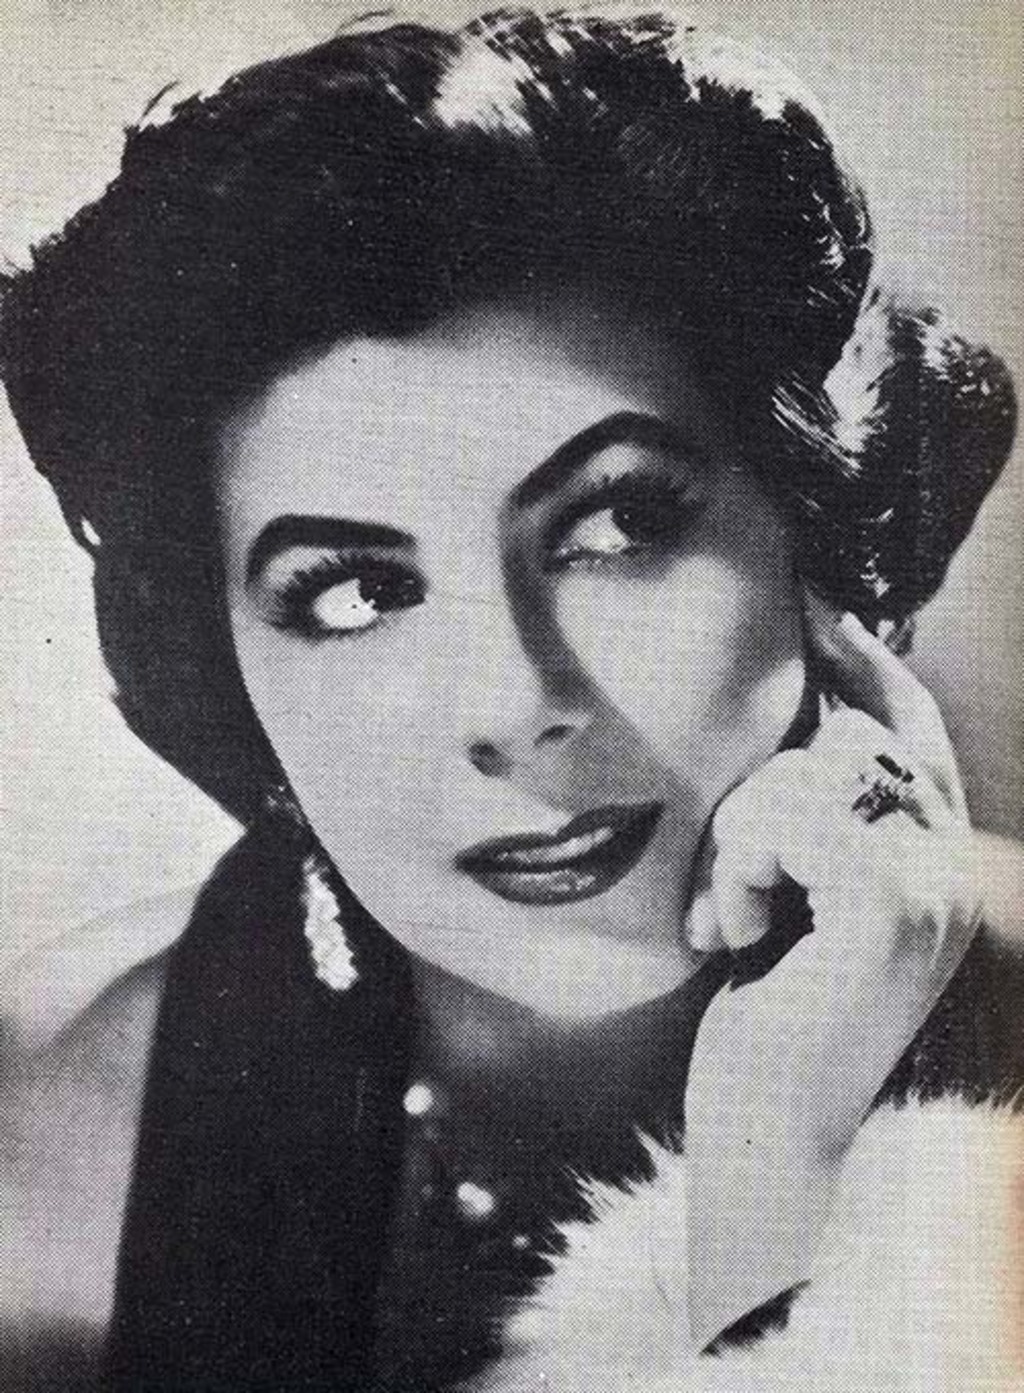 Luciana Serafini, soprano dramática italiana nacida en Módena, cantante estelar de la Scala de Milán. (CORTESÍA)